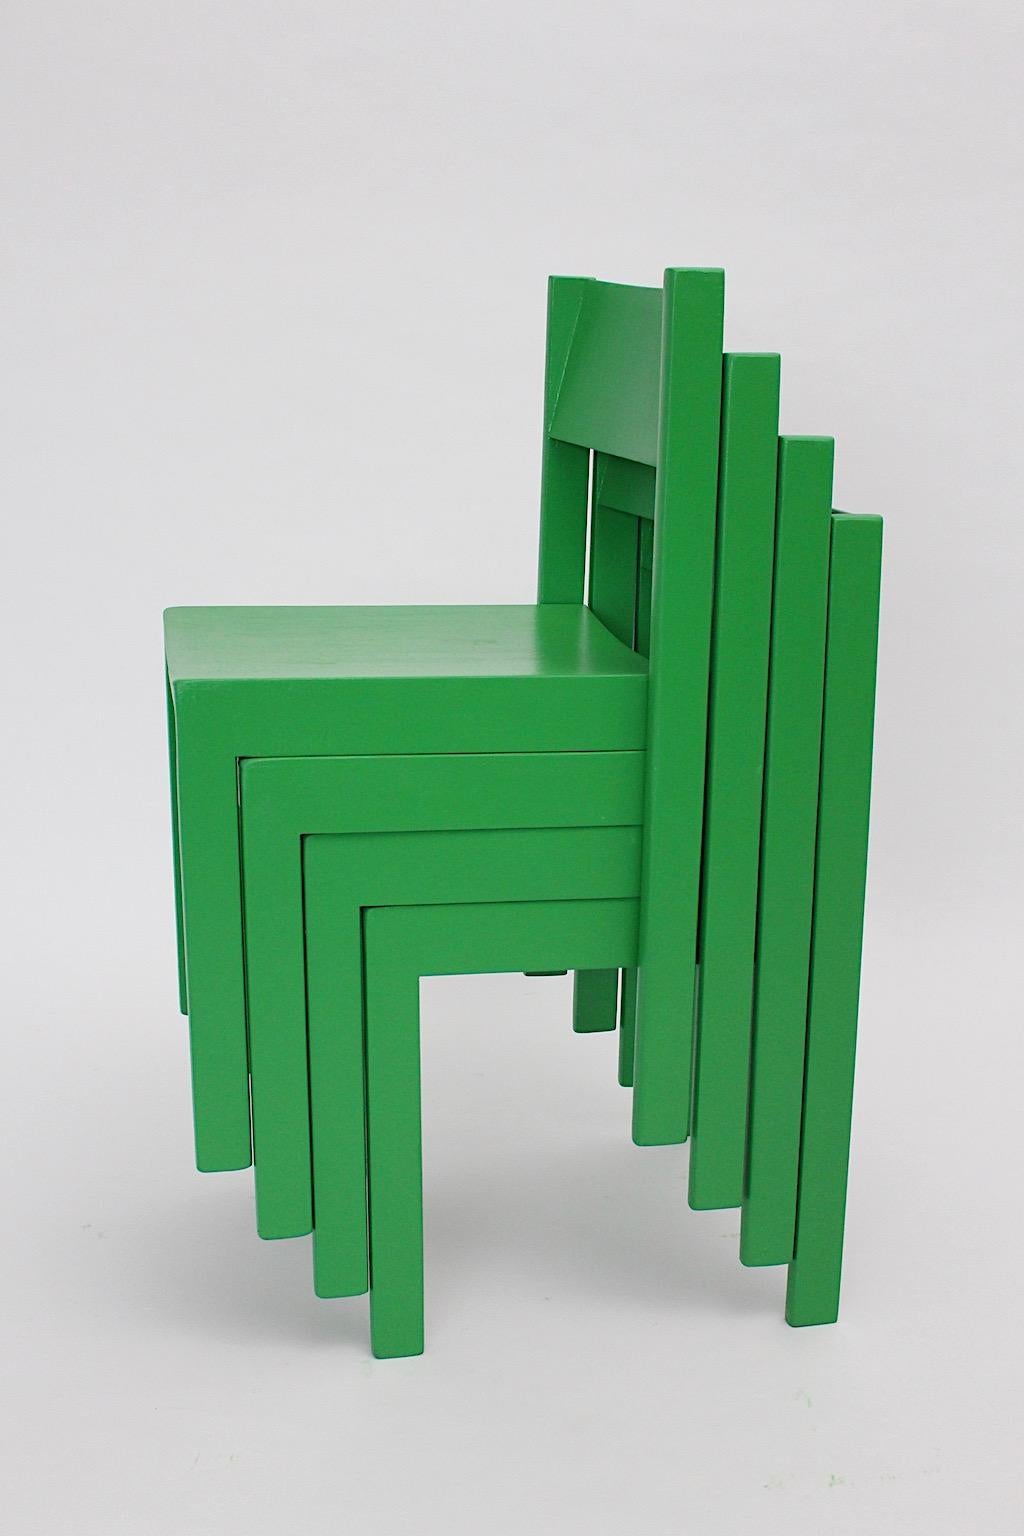 Mid Century Modern vintage Esszimmerstühle oder Stühle aus grün lackierter Buche und Sperrholz 1950er Jahre Österreich.
Verspielte kräftige grüne Farbe und klares Design, beide Eigenschaften sind im Aussehen von diesen Esszimmerstühlen oder Stühlen